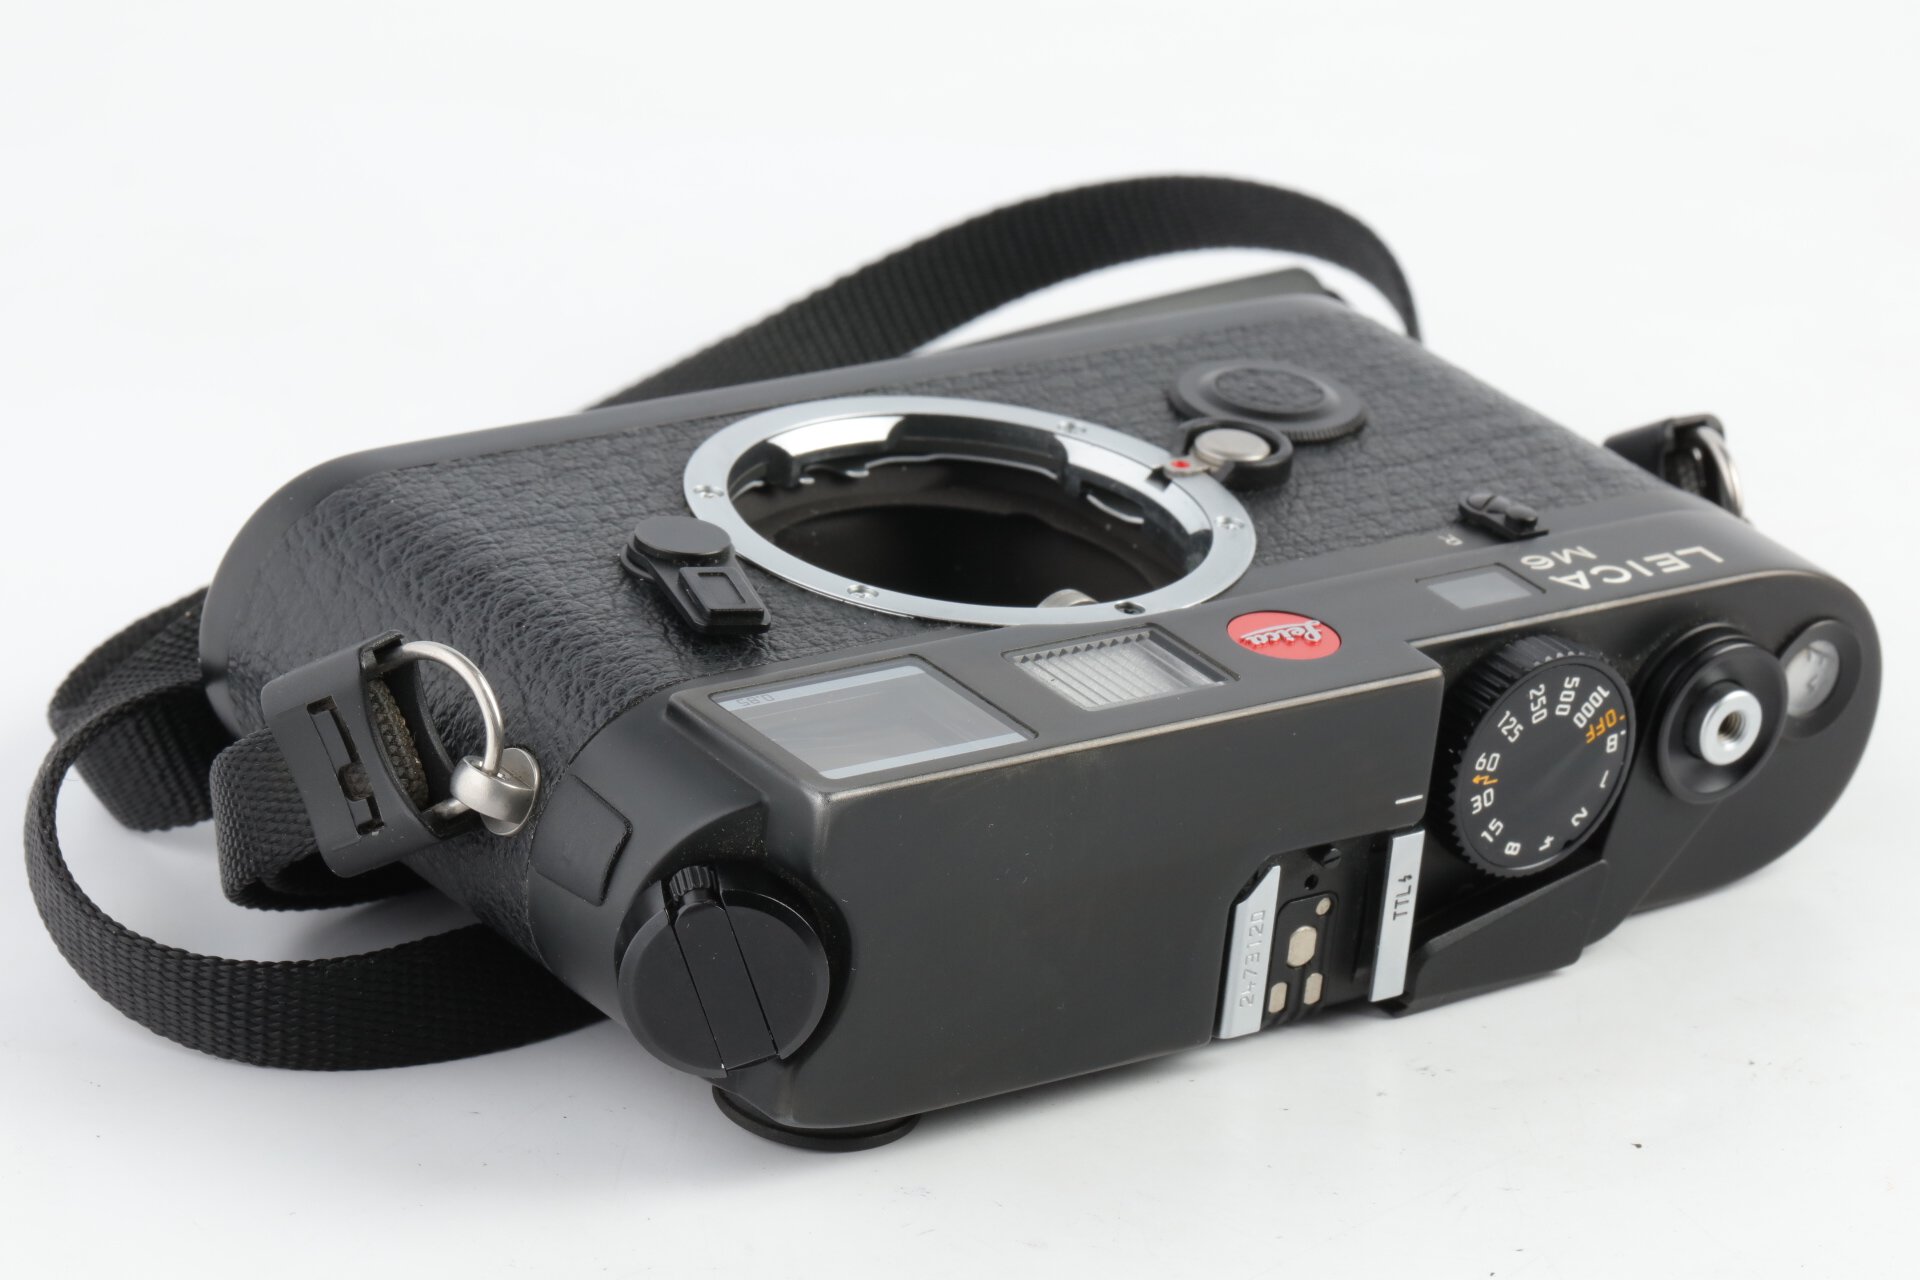 Leica M6 TTL 0.85 Gehäuse schwarz